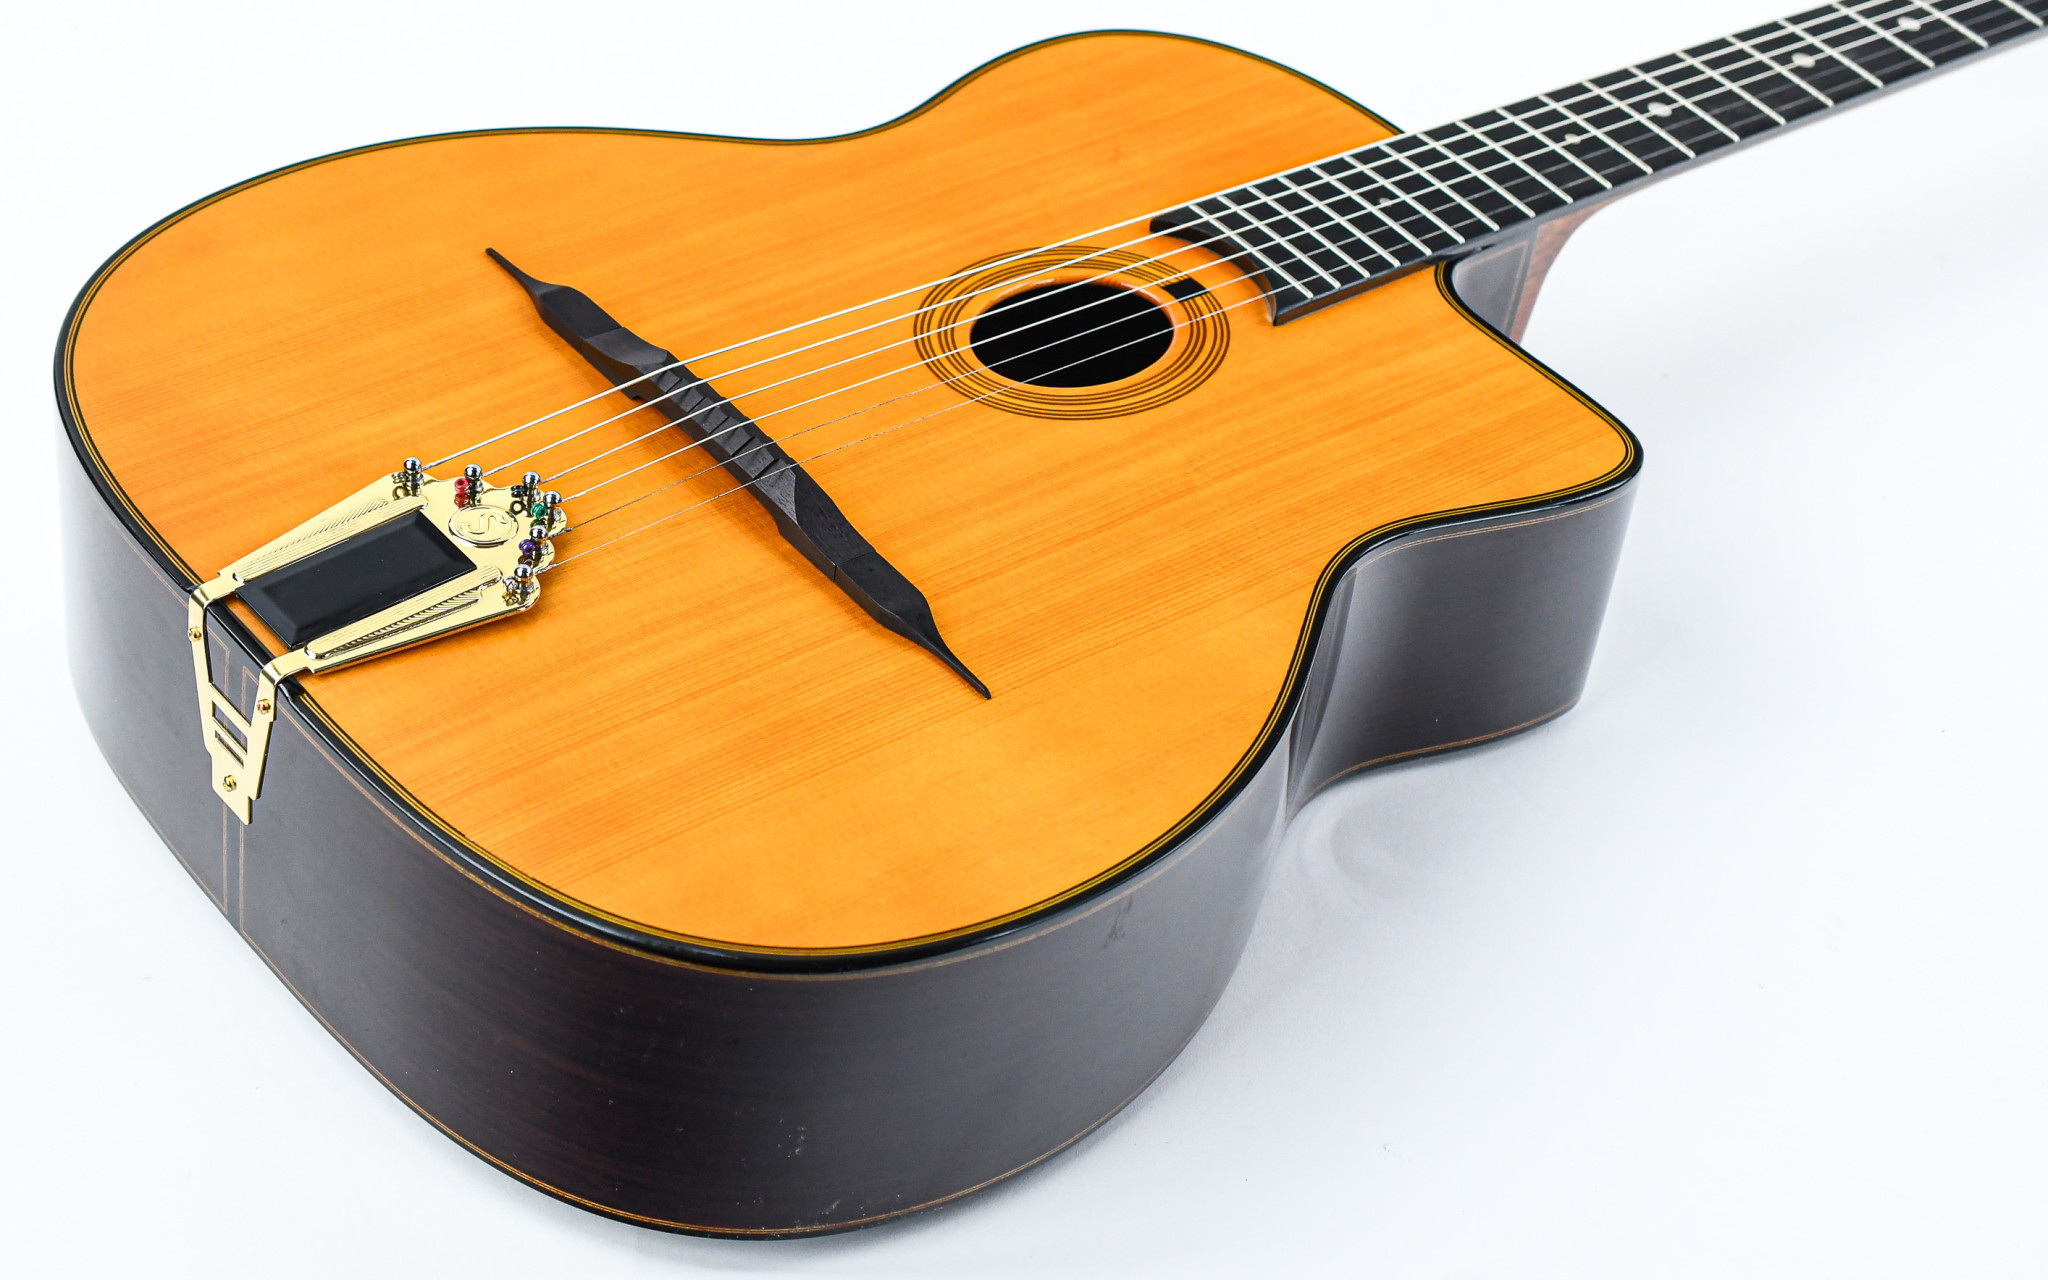 ジプシー ジャズ ギター GITANE DG-300 ジャンゴ ハードケース付き値段交渉歓迎です